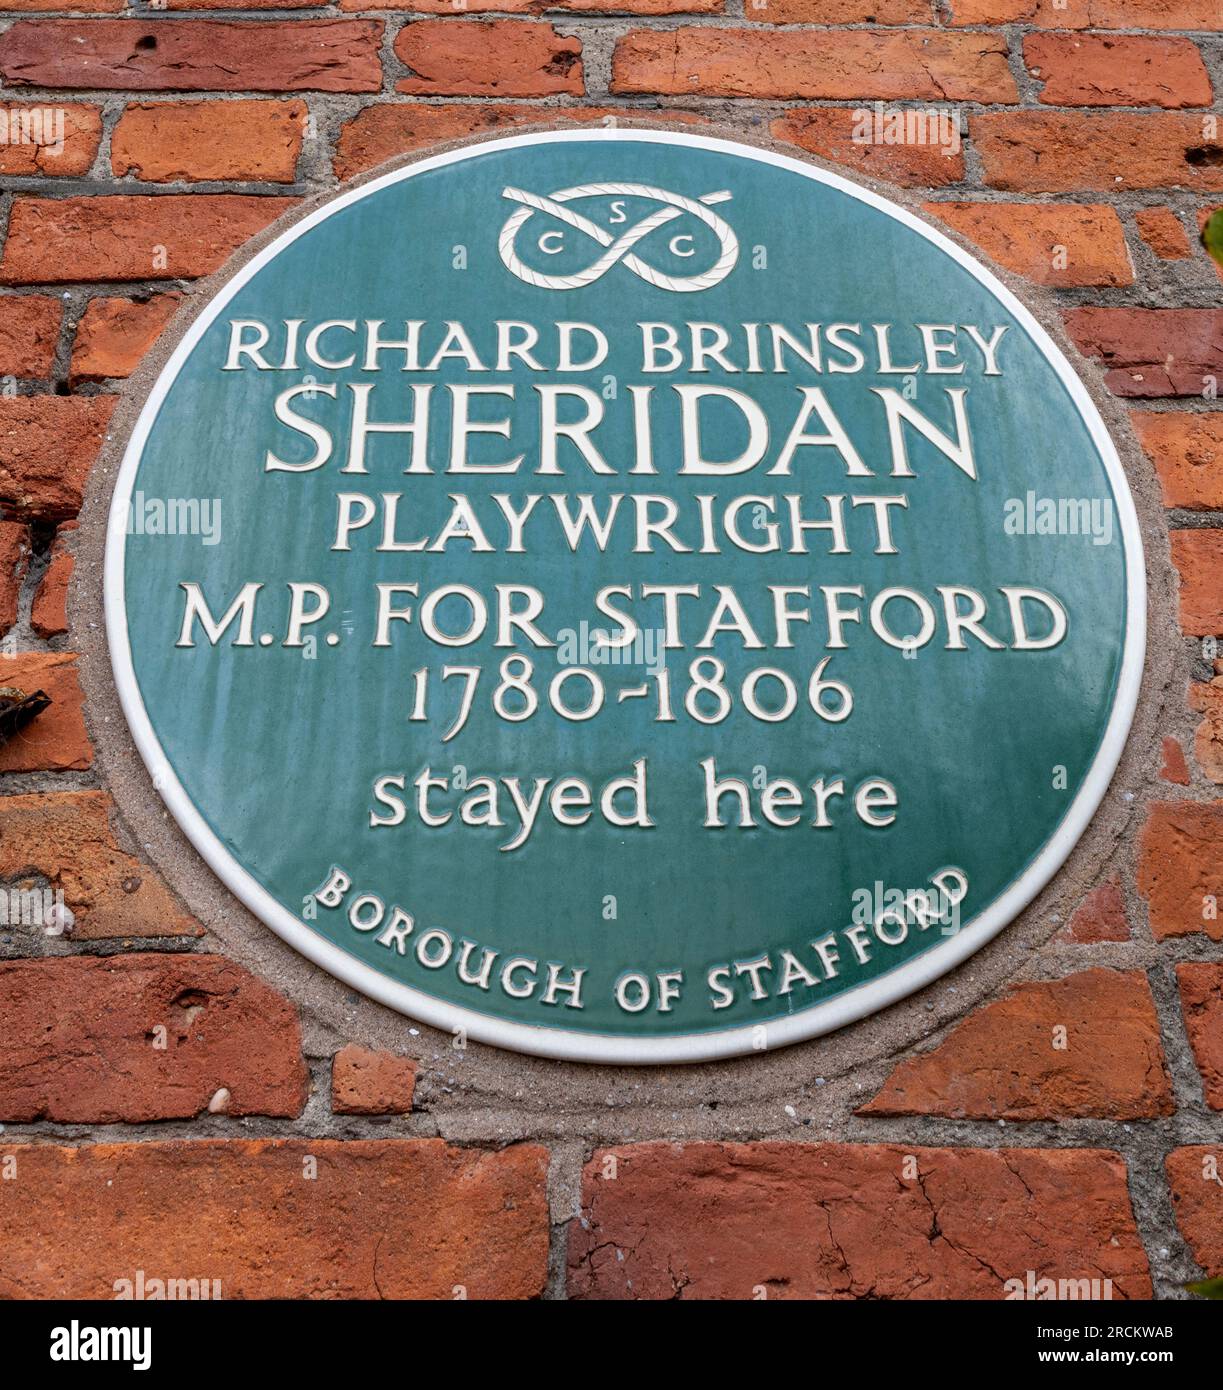 Plaque du patrimoine vert à la Post House, Stafford, Staffordshire, commémorant que Richard Brinsley Sheridan député de Stafford y est resté. Banque D'Images